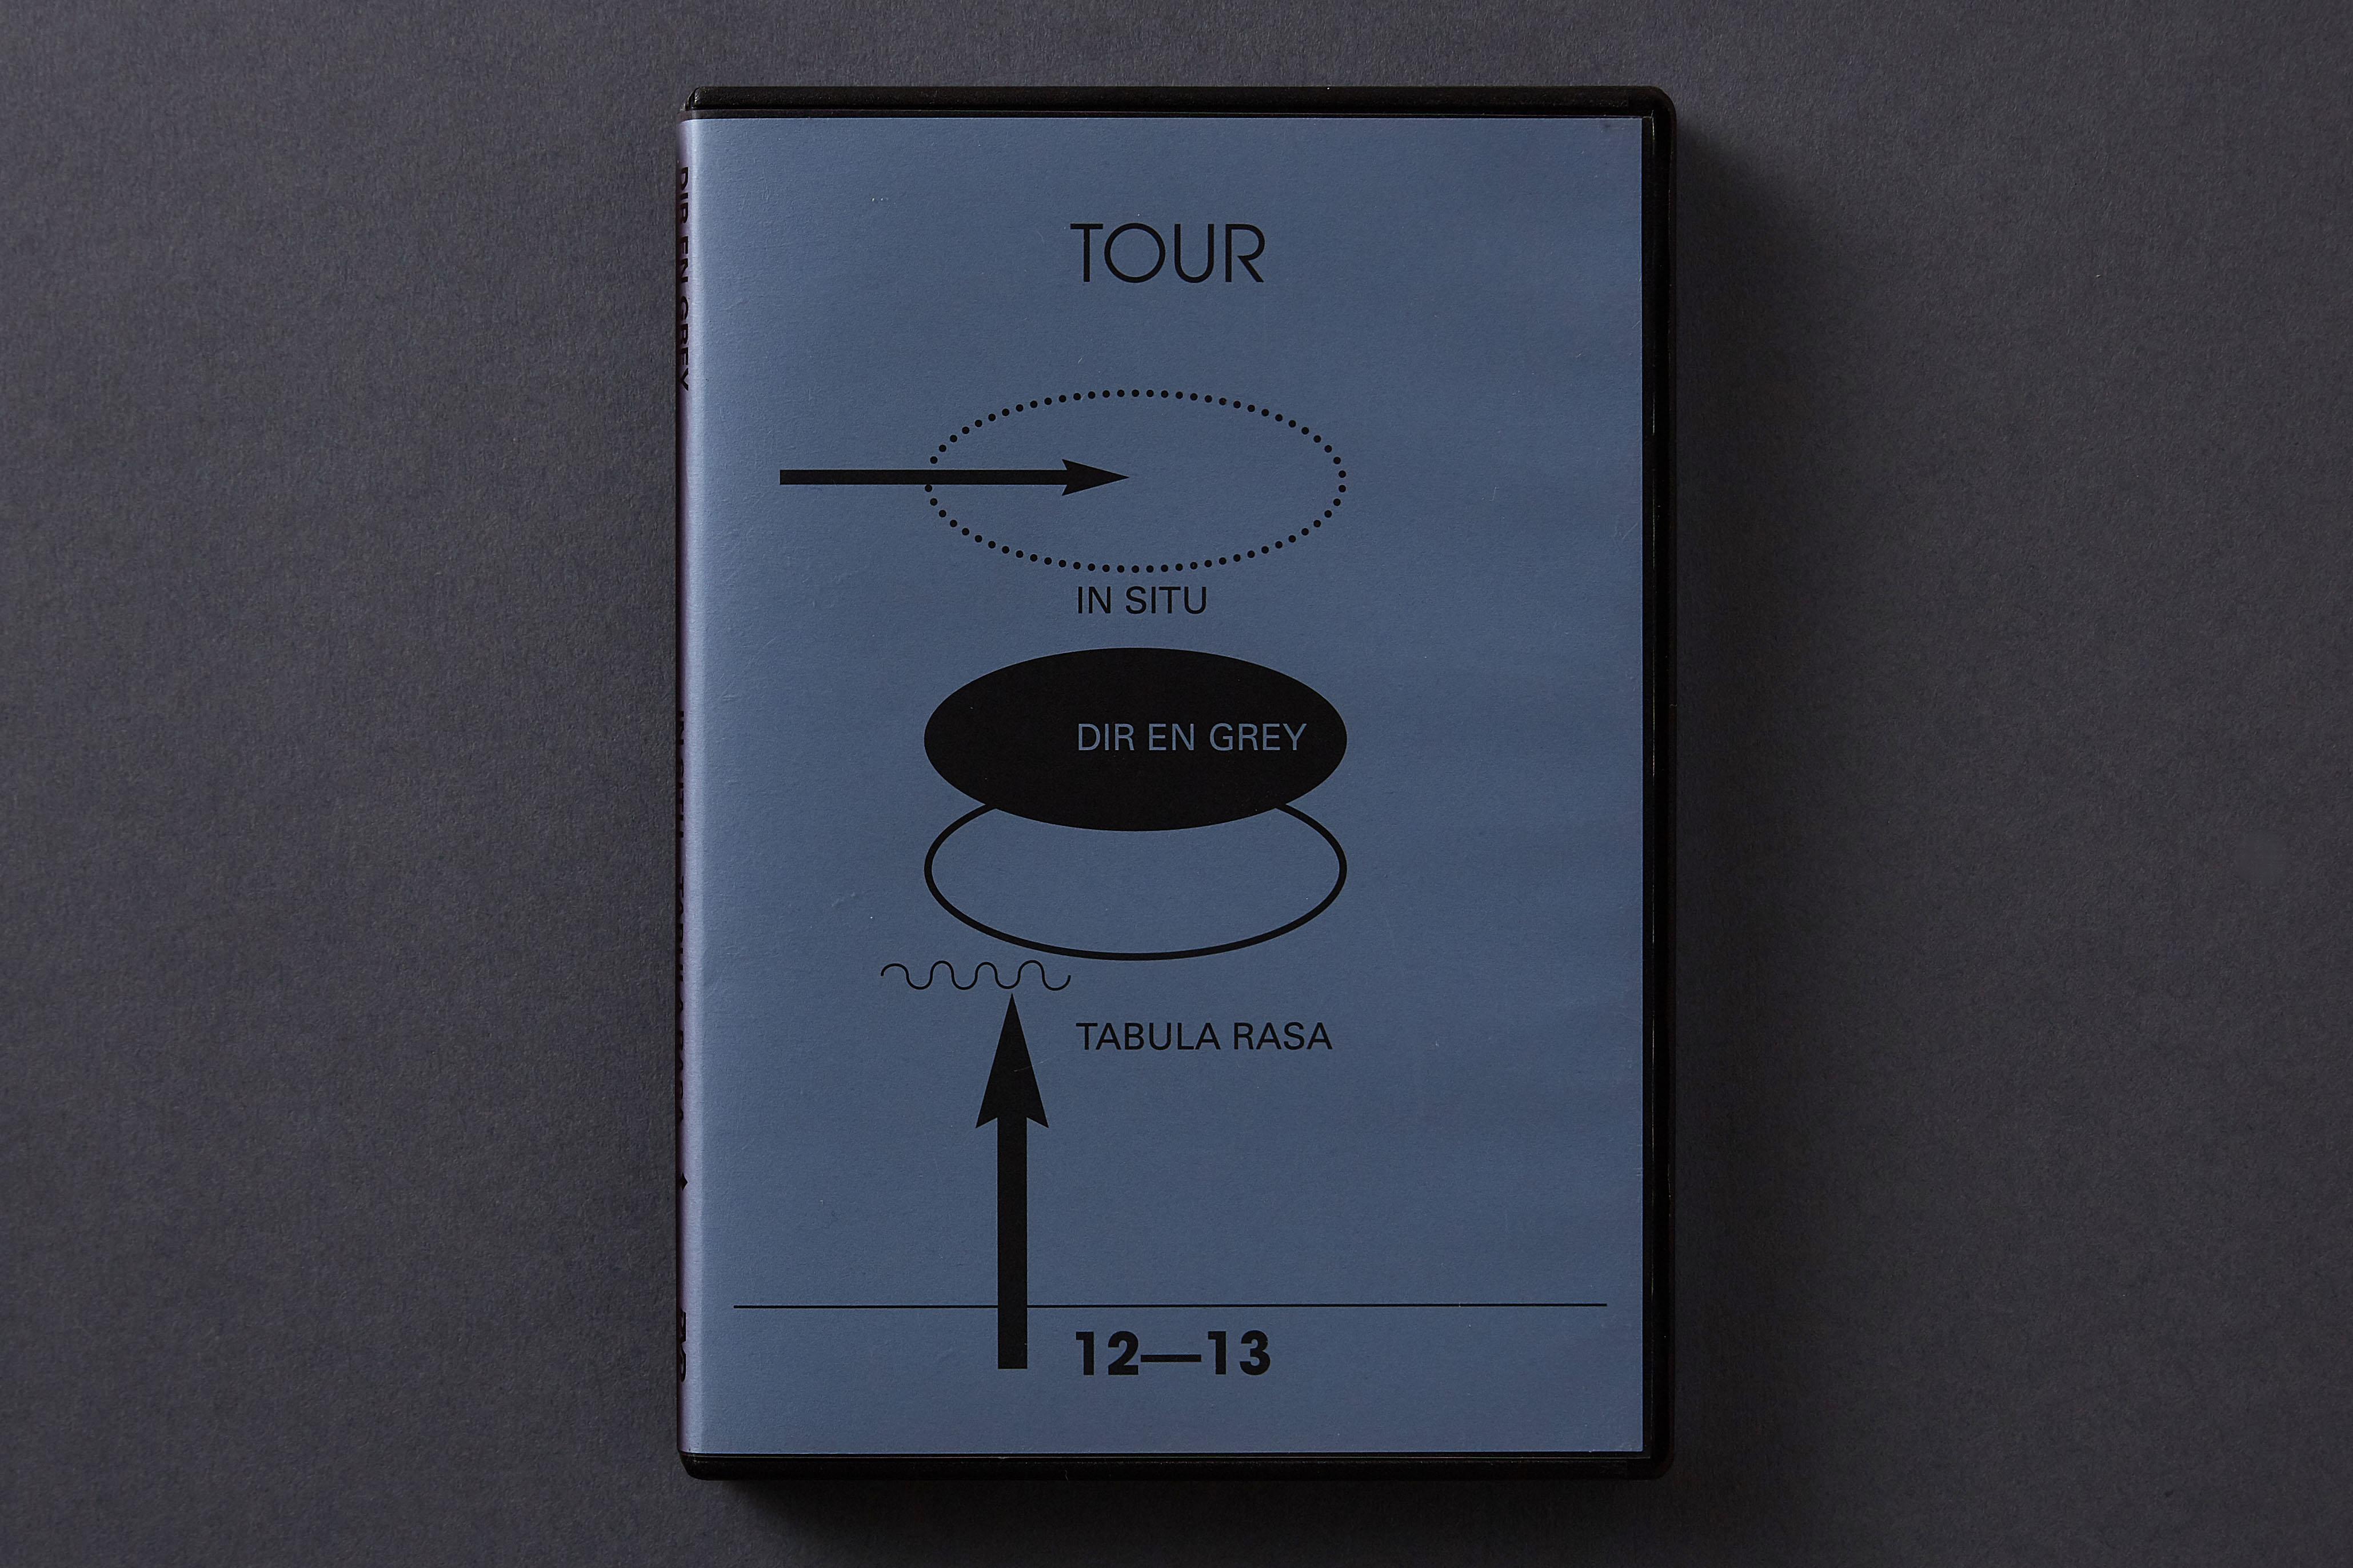 Dir En Grey: Tour12—13 In Situ—Tabula Rasa (DVD, 2013) - Kamikene